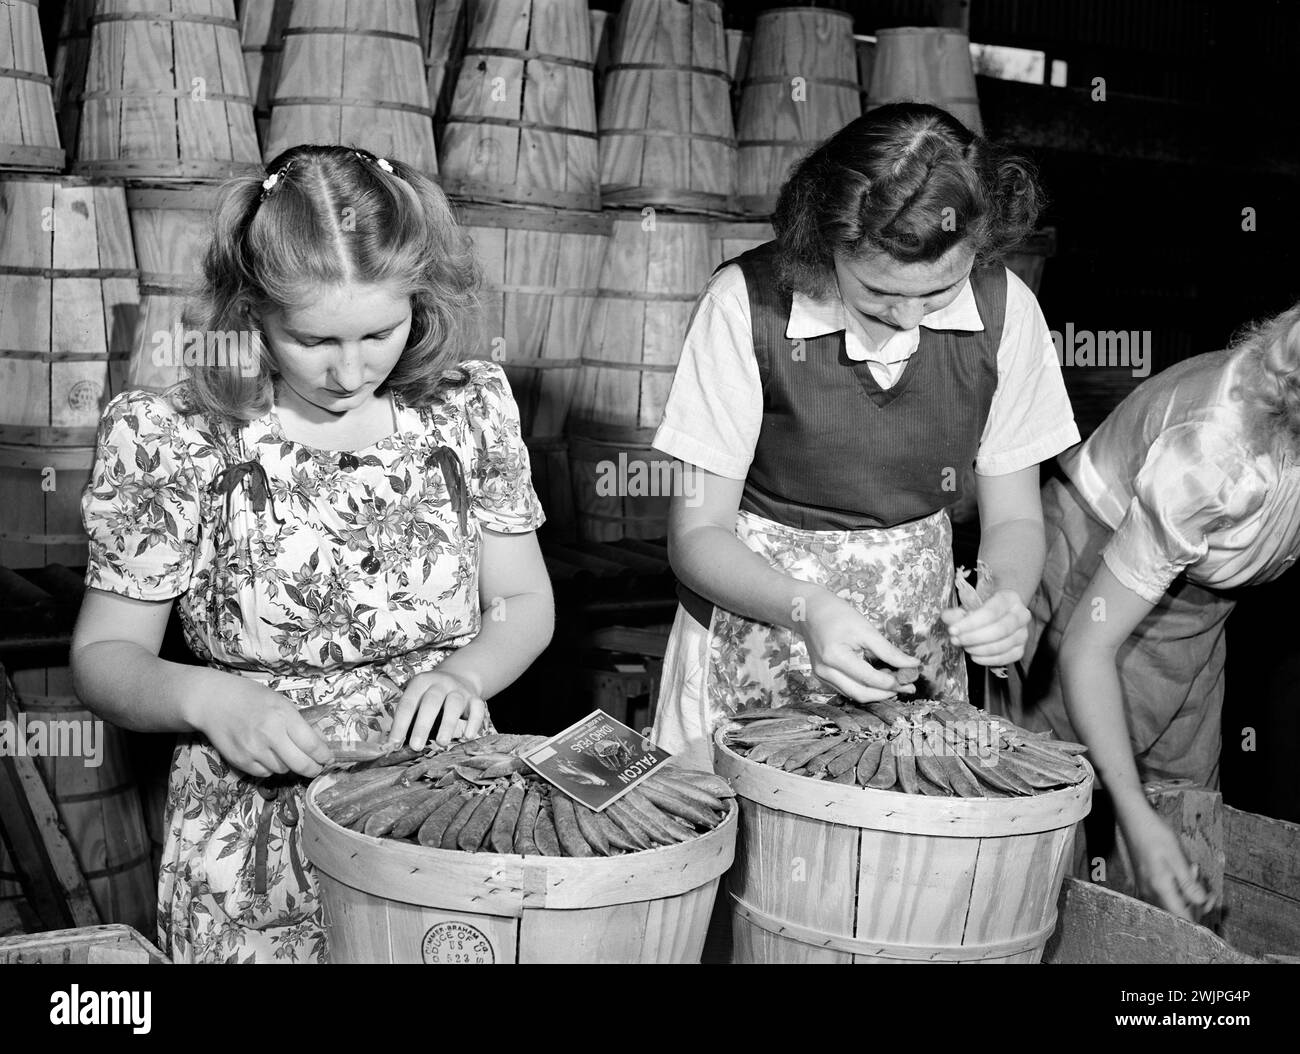 Jeunes femmes 'habillant' des caisses de pois pour l'expédition, Canyon County, Idaho, USA, Russell Lee, U.S. Farm Security Administration, juin 1941 Banque D'Images